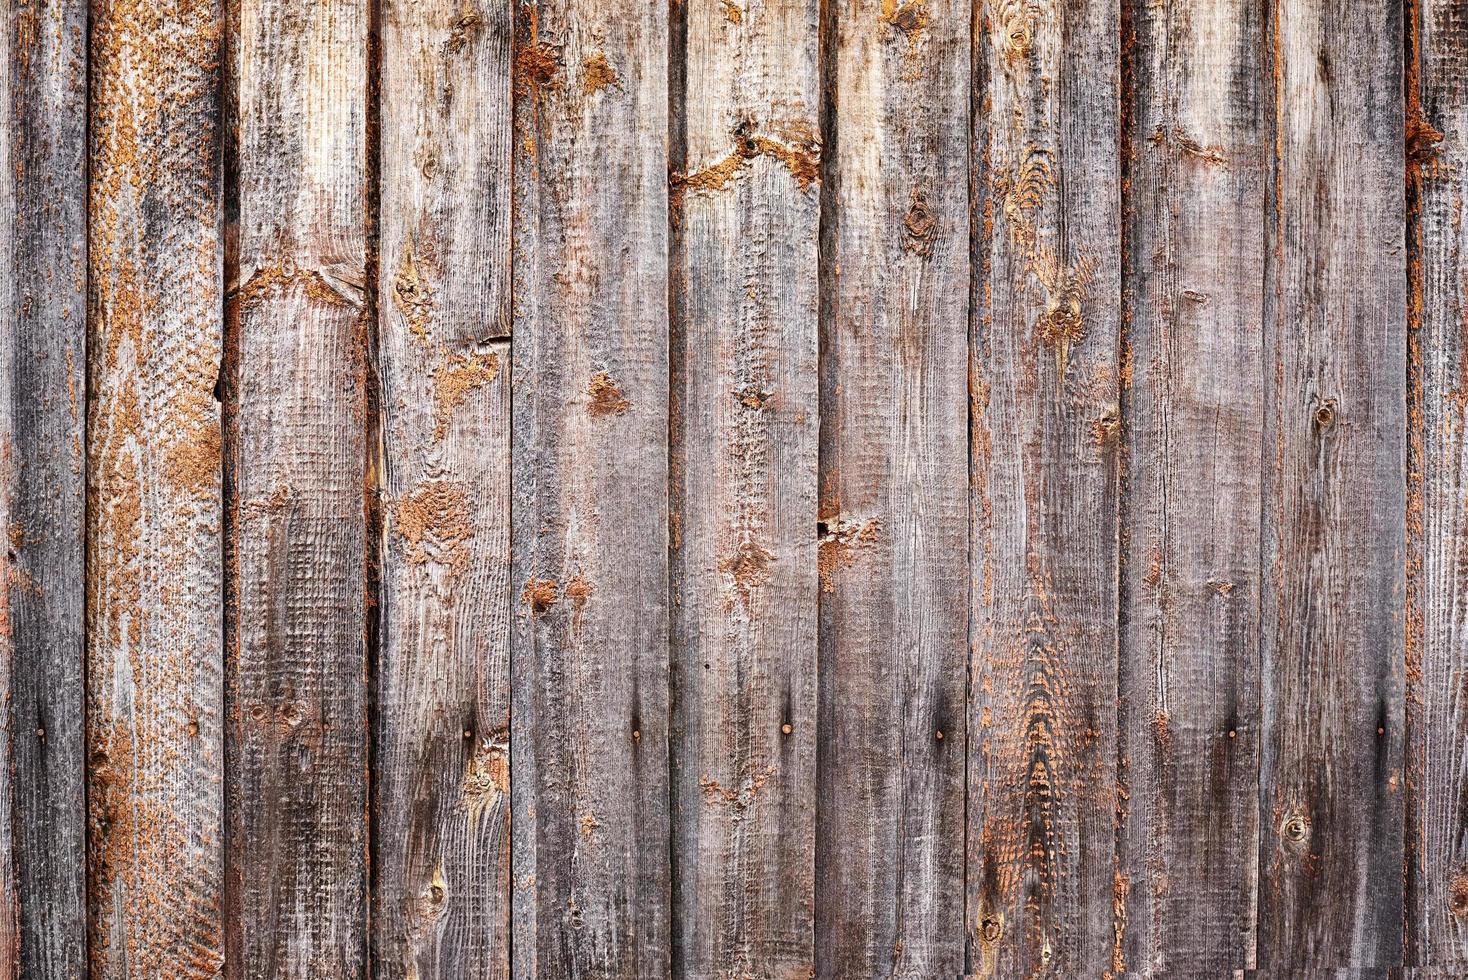 Old wood texture. A dark grunge wooden planks background photo